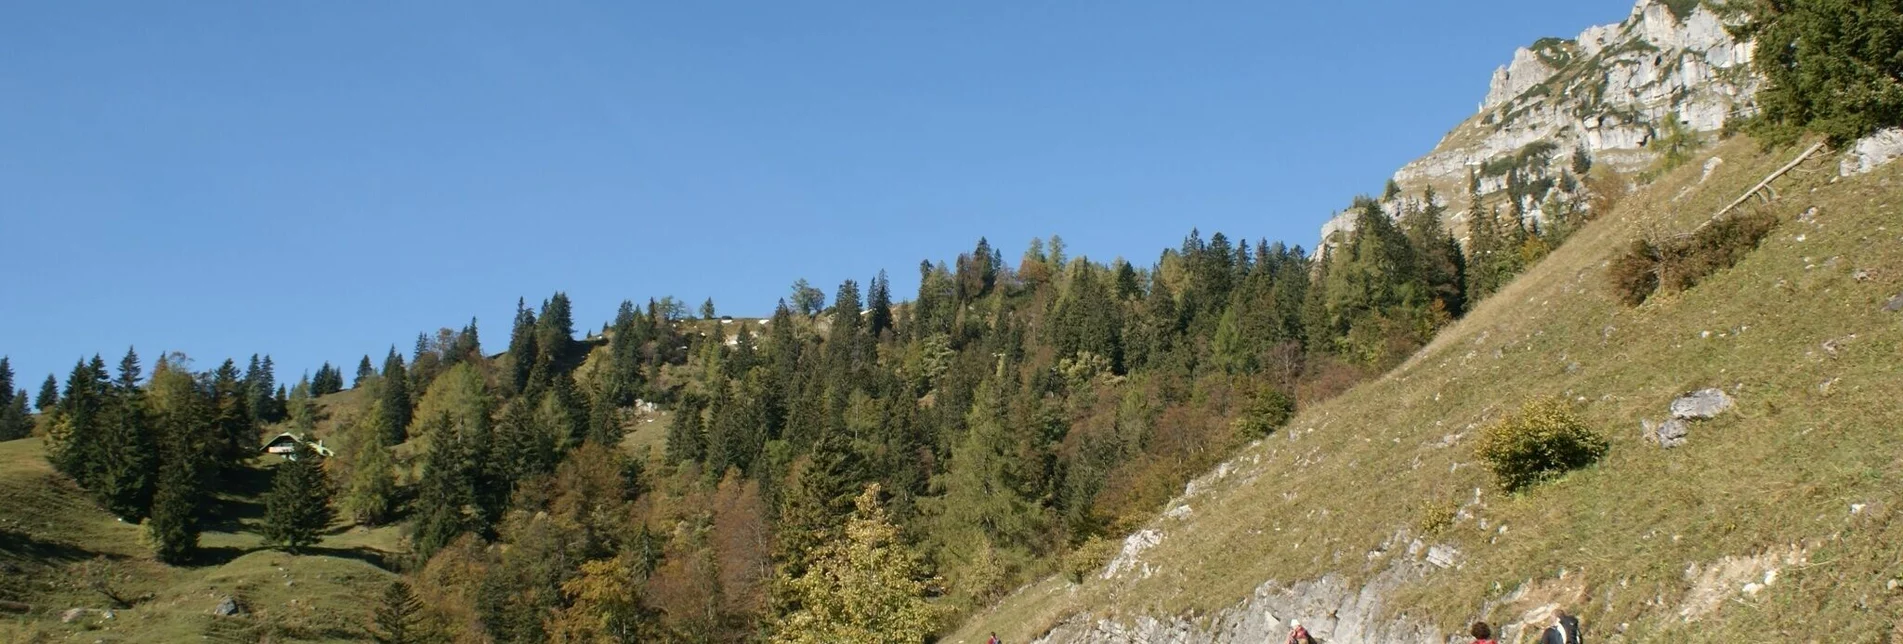 Mountain Hike Grabneralm with Grabnerstein (1848 m) - Touren-Impression #1 | © TV Gesäuse